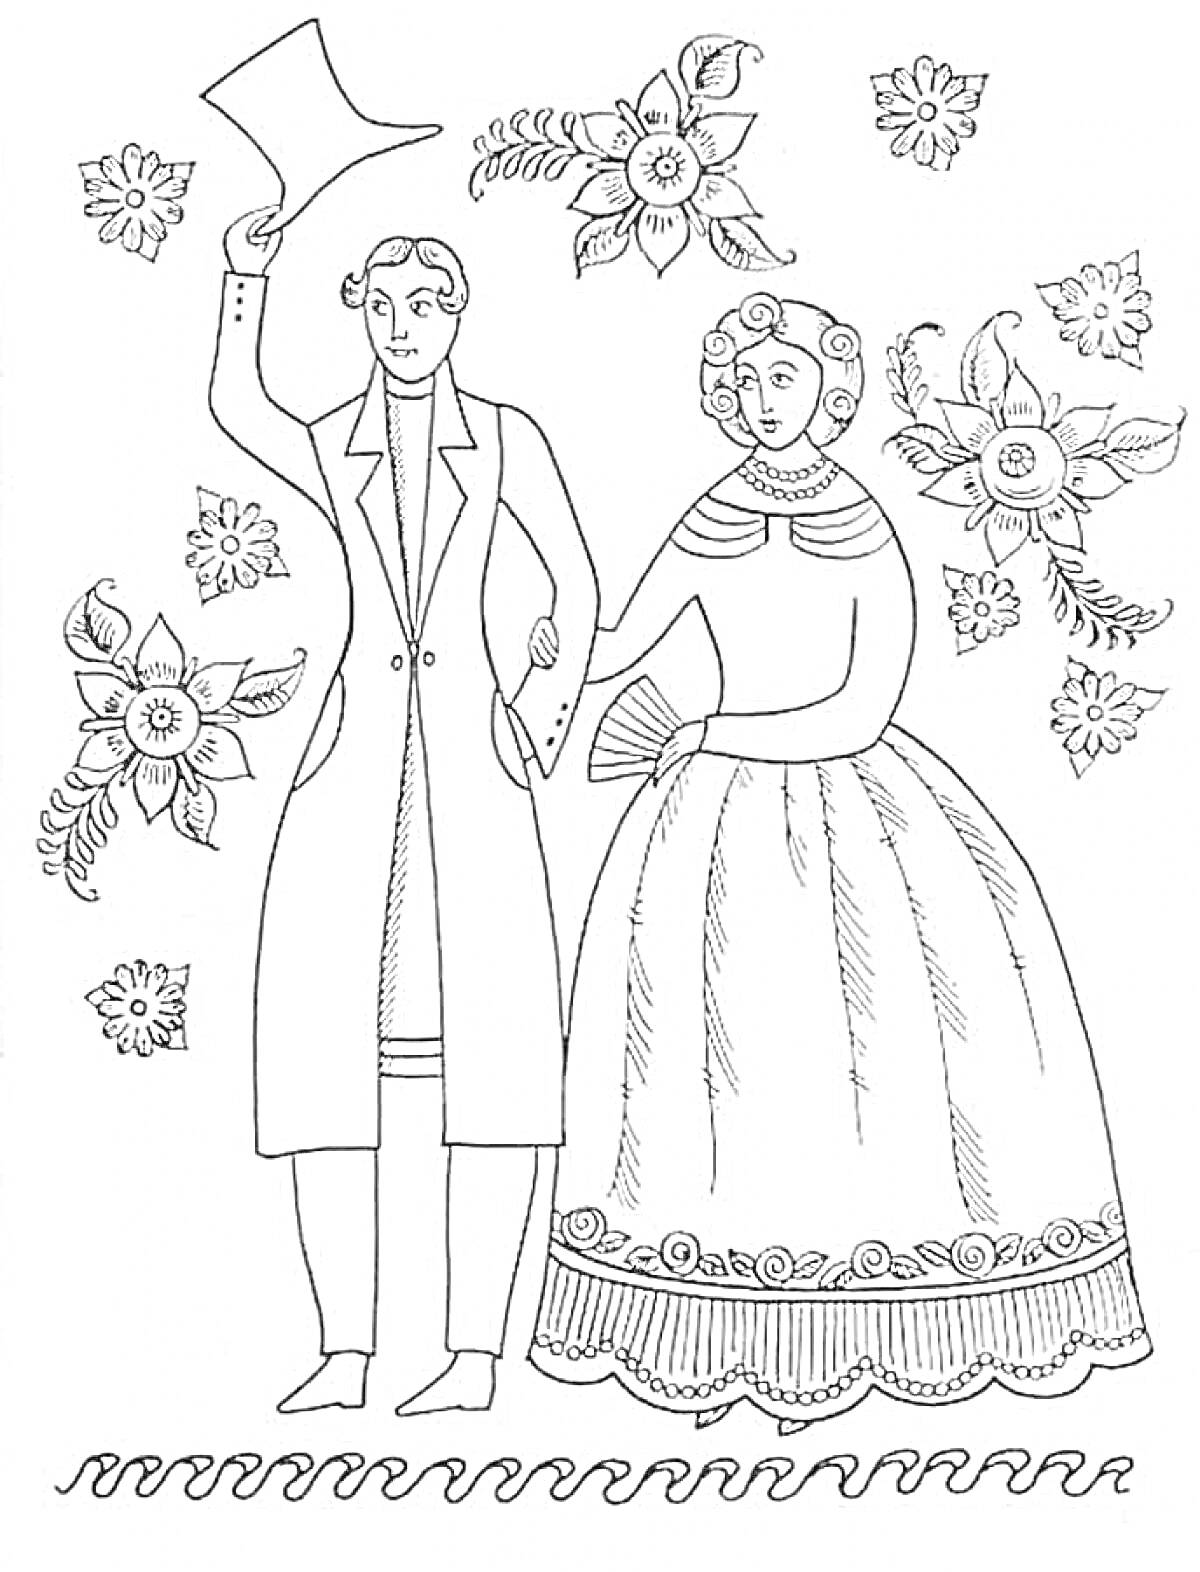 Пара в традиционных костюмах среди цветов